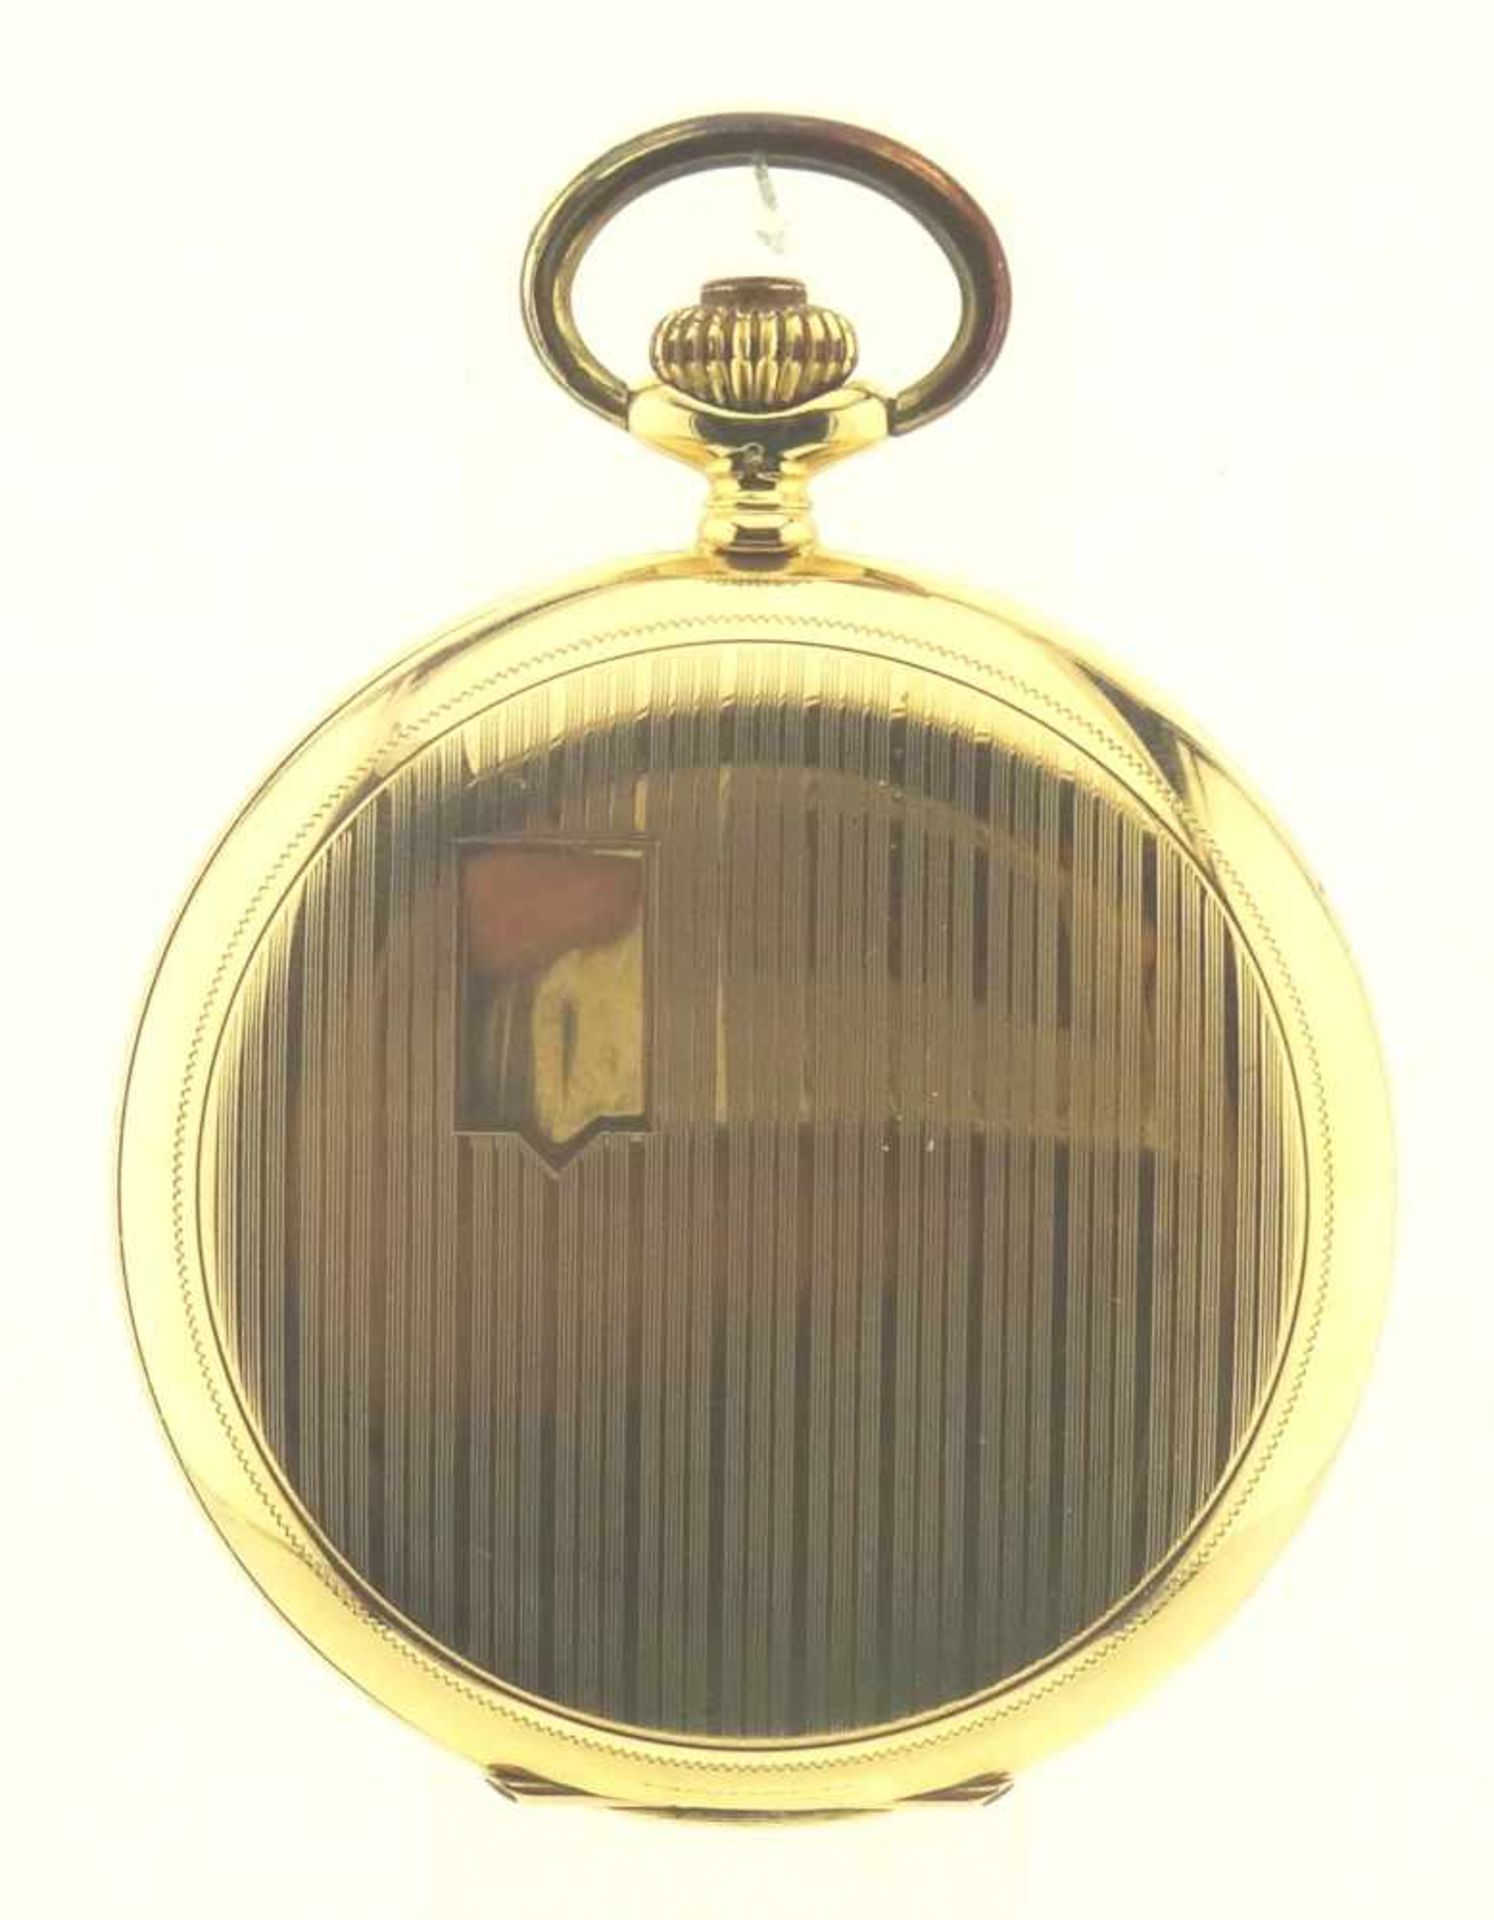 Sprungdeckeltaschenuhr Gold 585 mit 3 Deckeln in Gold 585, Uhrwerk mit Ankerhemmung läuft gut, - Bild 5 aus 6